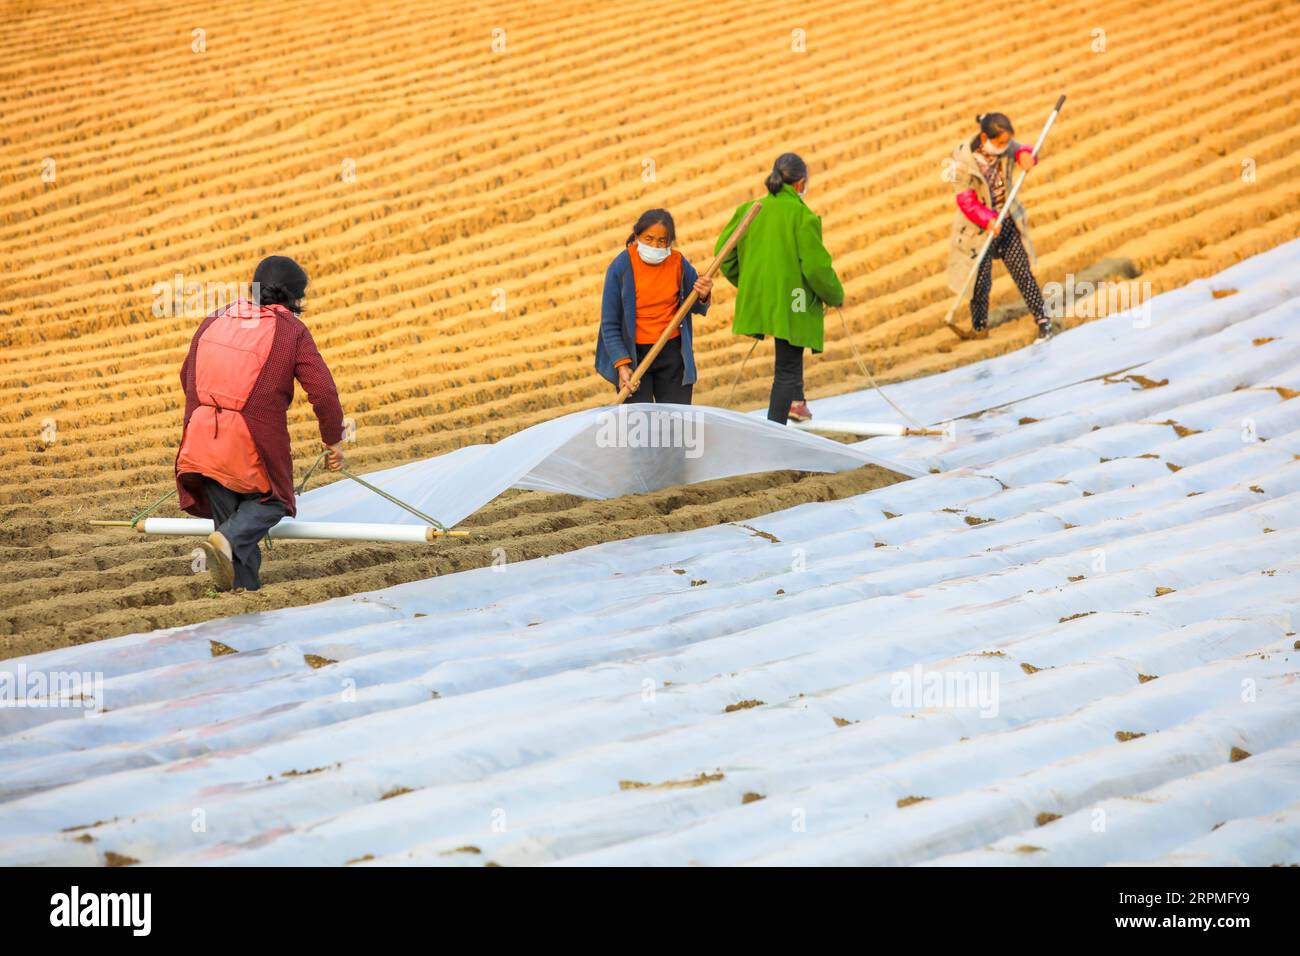 200211 -- SUINING, 11. Februar 2020 -- Dorfbewohner, die Gesichtsmasken tragen, arbeiten auf Feldern im Dorf Sangshulin, Tuopai Township der Stadt Shehong, Provinz Sichuan im Südwesten Chinas, 11. Februar 2020. Landwirte in ganz China haben die Produktion wieder aufgenommen, nachdem sie die erforderlichen Maßnahmen zum Schutz vor neuartigen Coronaviren ergriffen haben. Bis zum 10. Februar hatten etwa 94,6 Prozent der großen Getreideerzeugungs- und -Verarbeitungsunternehmen die Produktion wieder aufgenommen. Foto von /Xinhua CHINA-NCP-AGRICULTURE-RESUMPTION CN LiuxChangsong PUBLICATIONxNOTxINxCHN Stockfoto